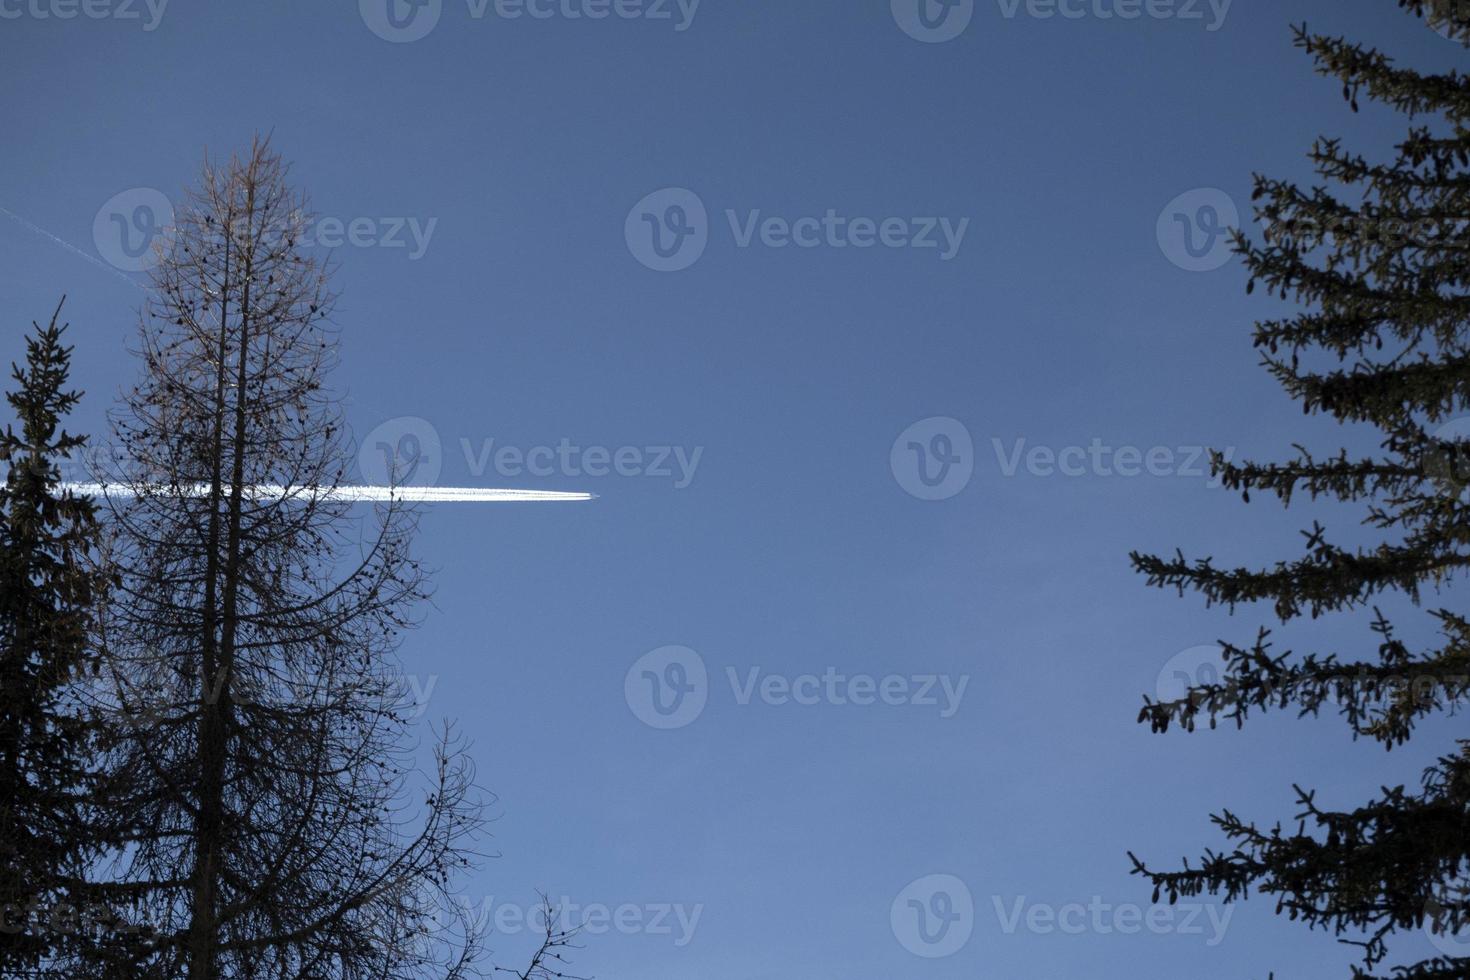 airplaine wakes on blue mountain dolomites sky photo